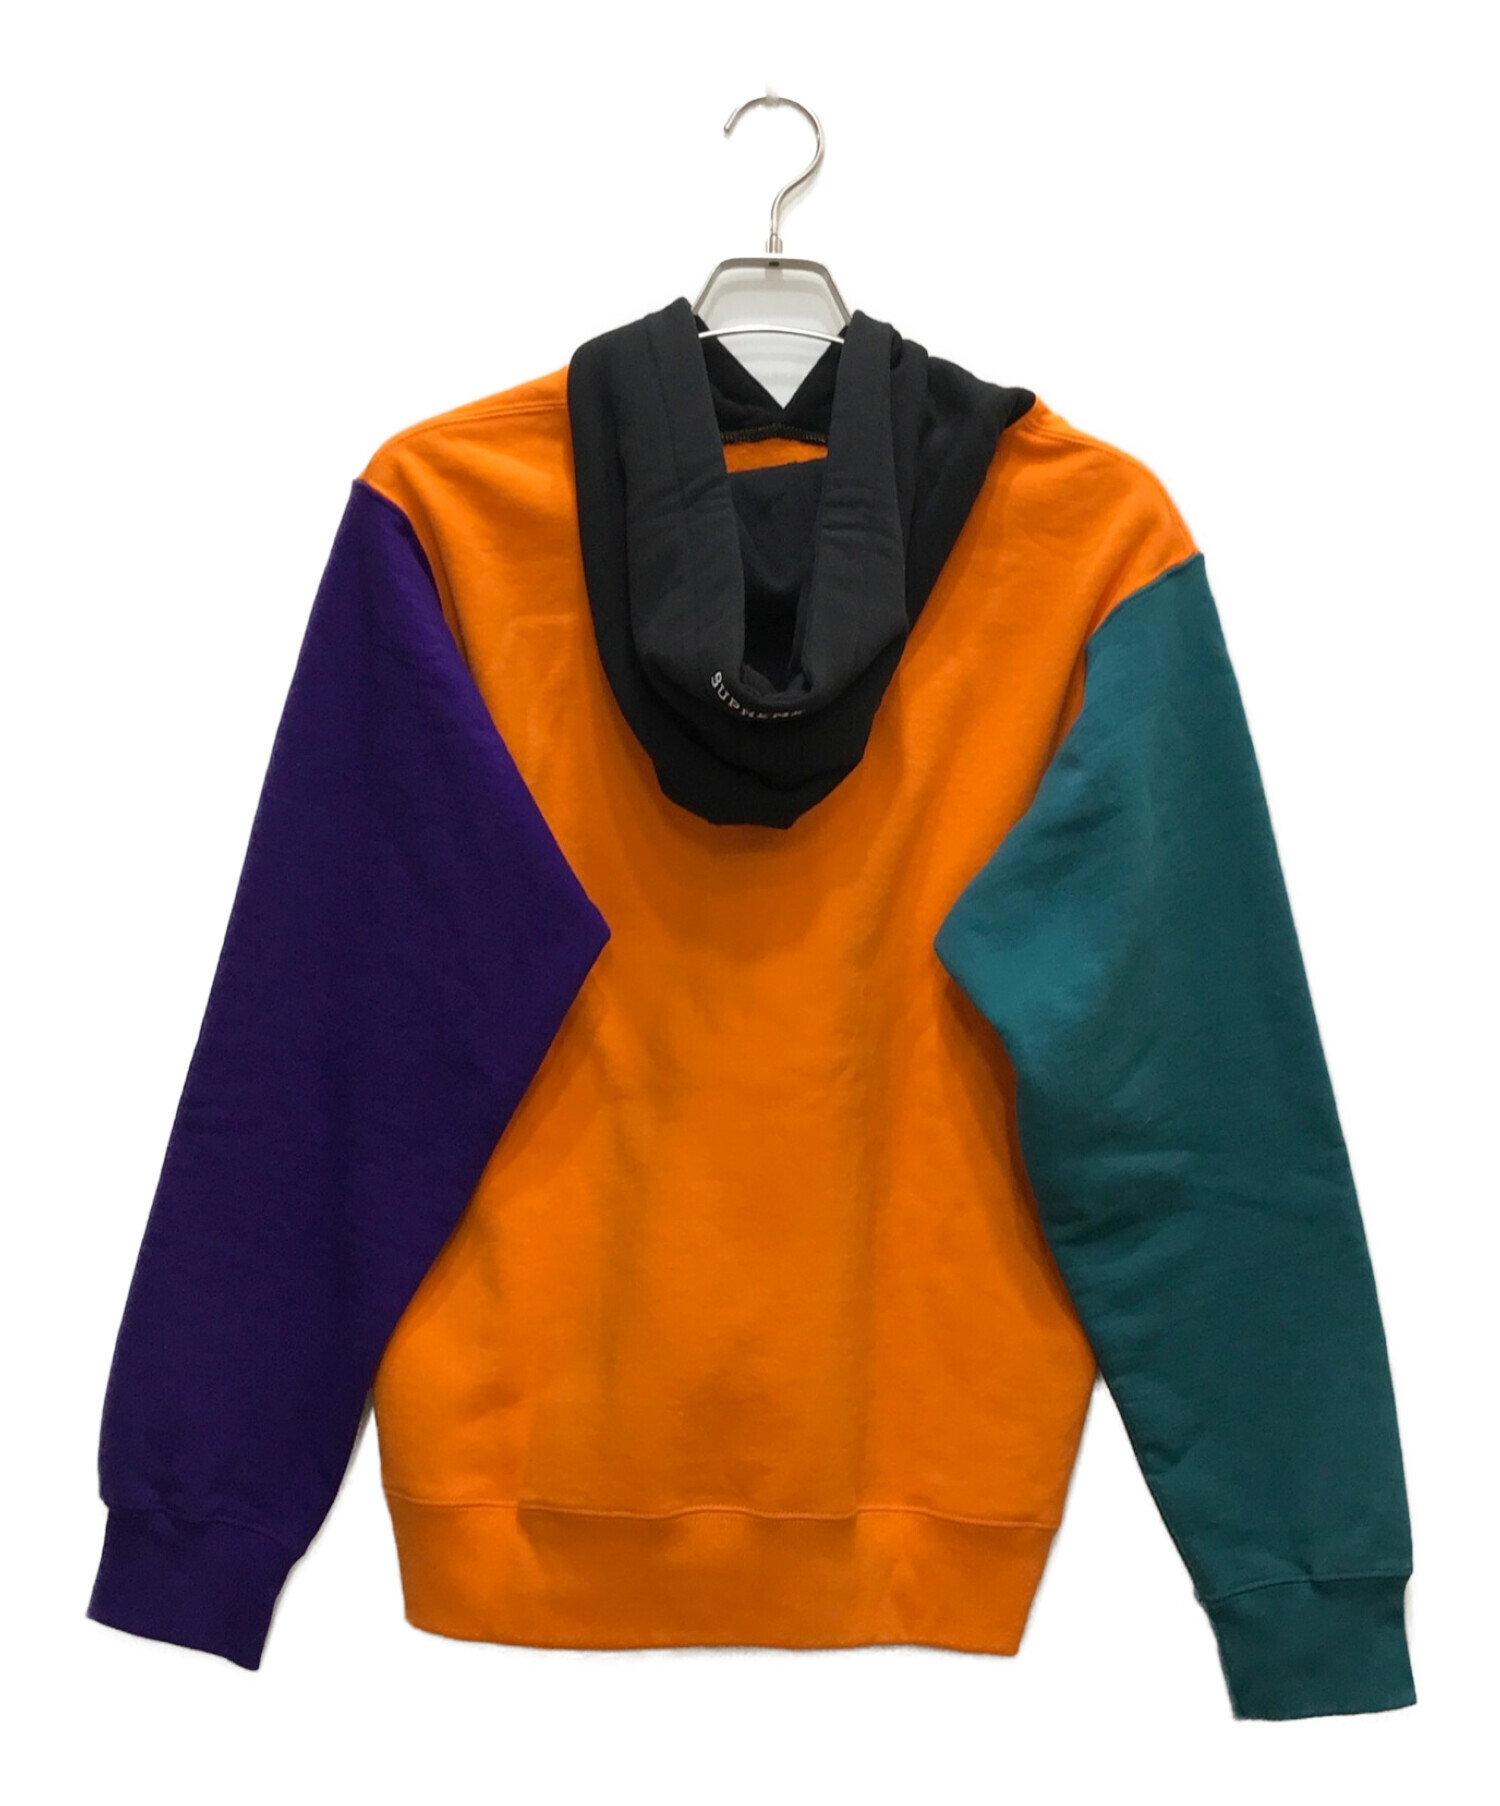 SUPREME (シュプリーム) S Logo Colorblocked Hooded Sweatshirt オレンジ×ブラック サイズ:M